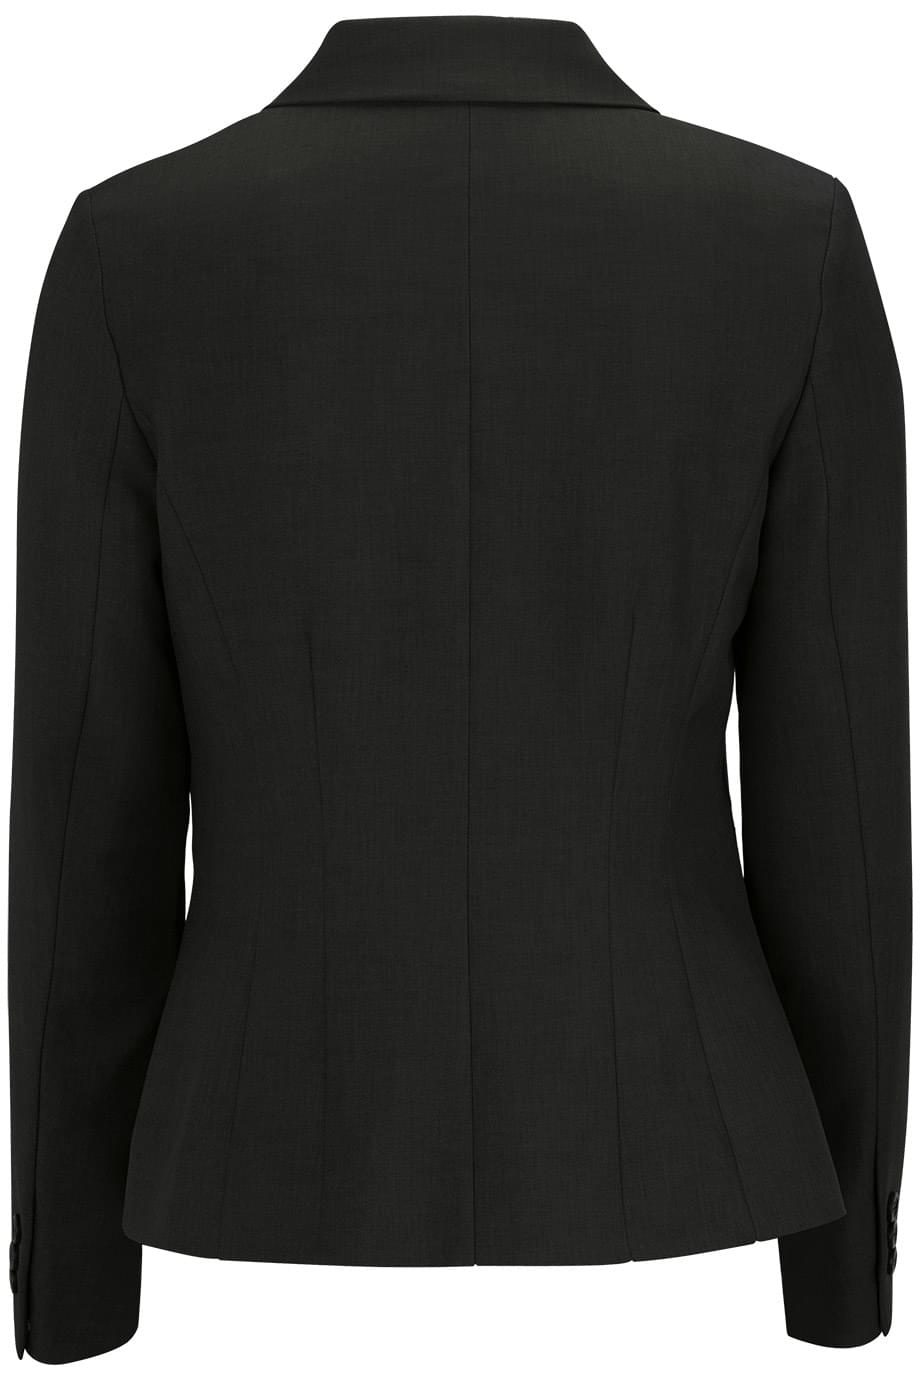 SYNERGY SUIT COAT | Edwards Garment